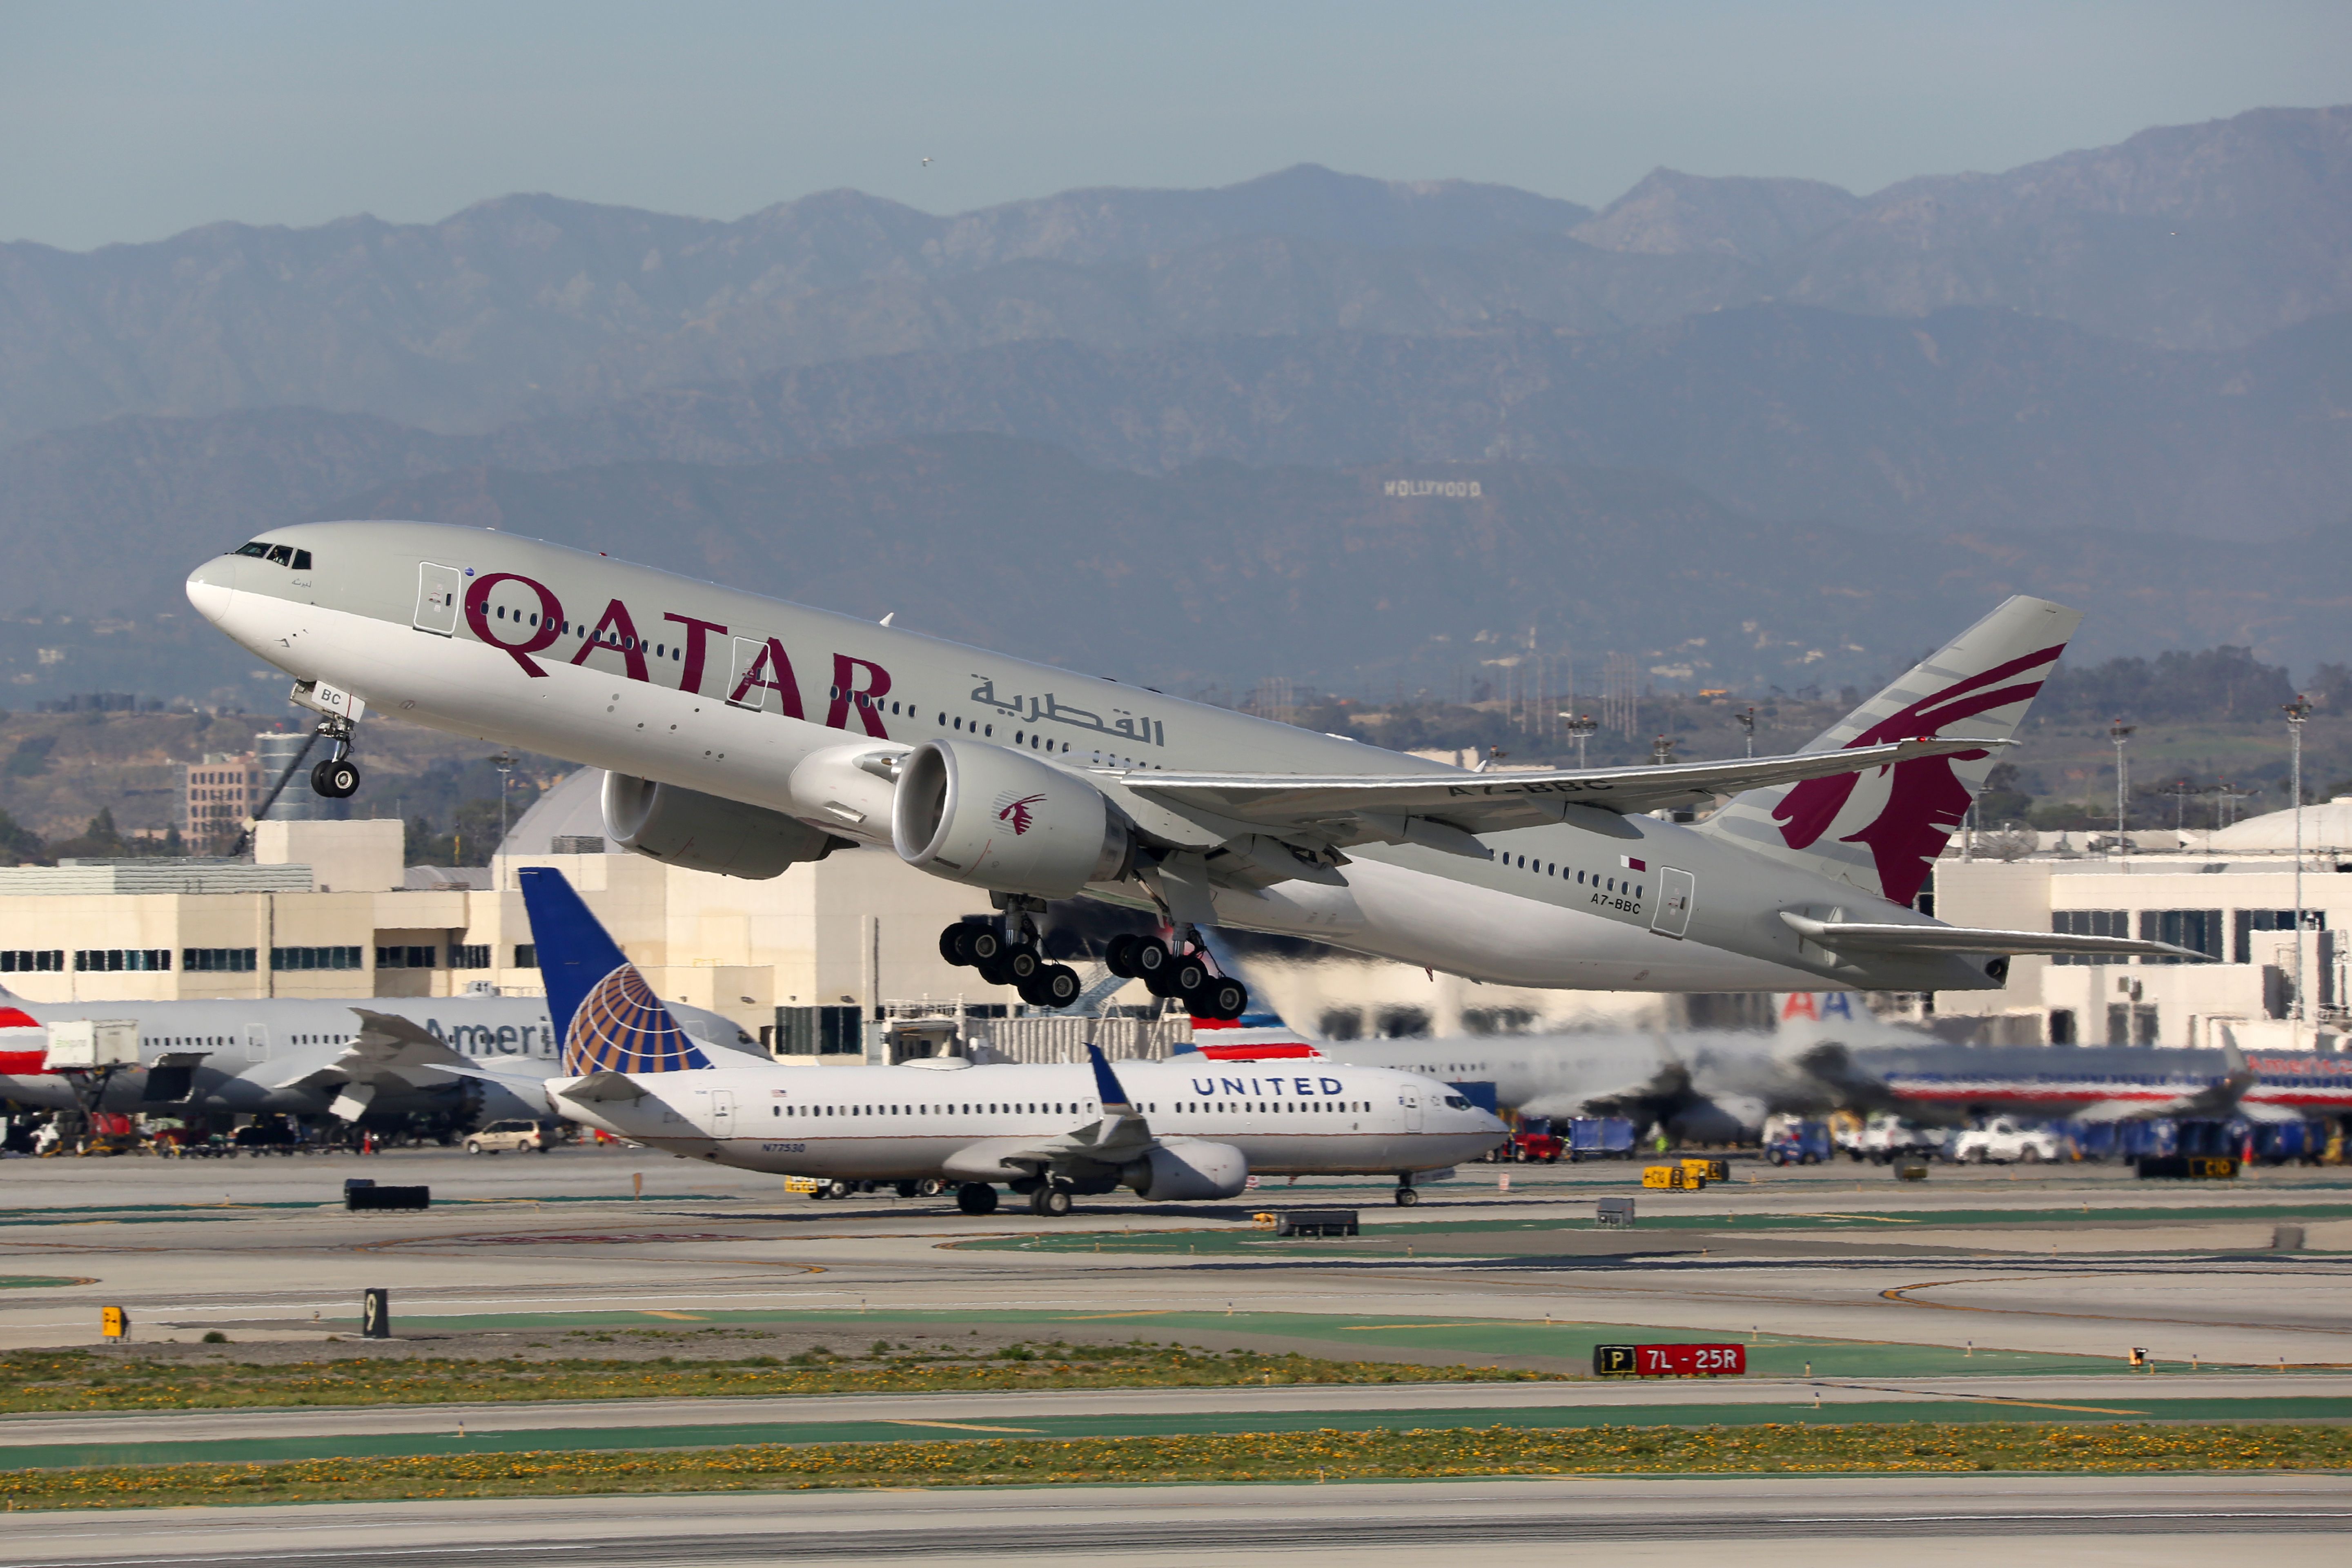 A Qatar Airways Boeing 777-200LR taking off.